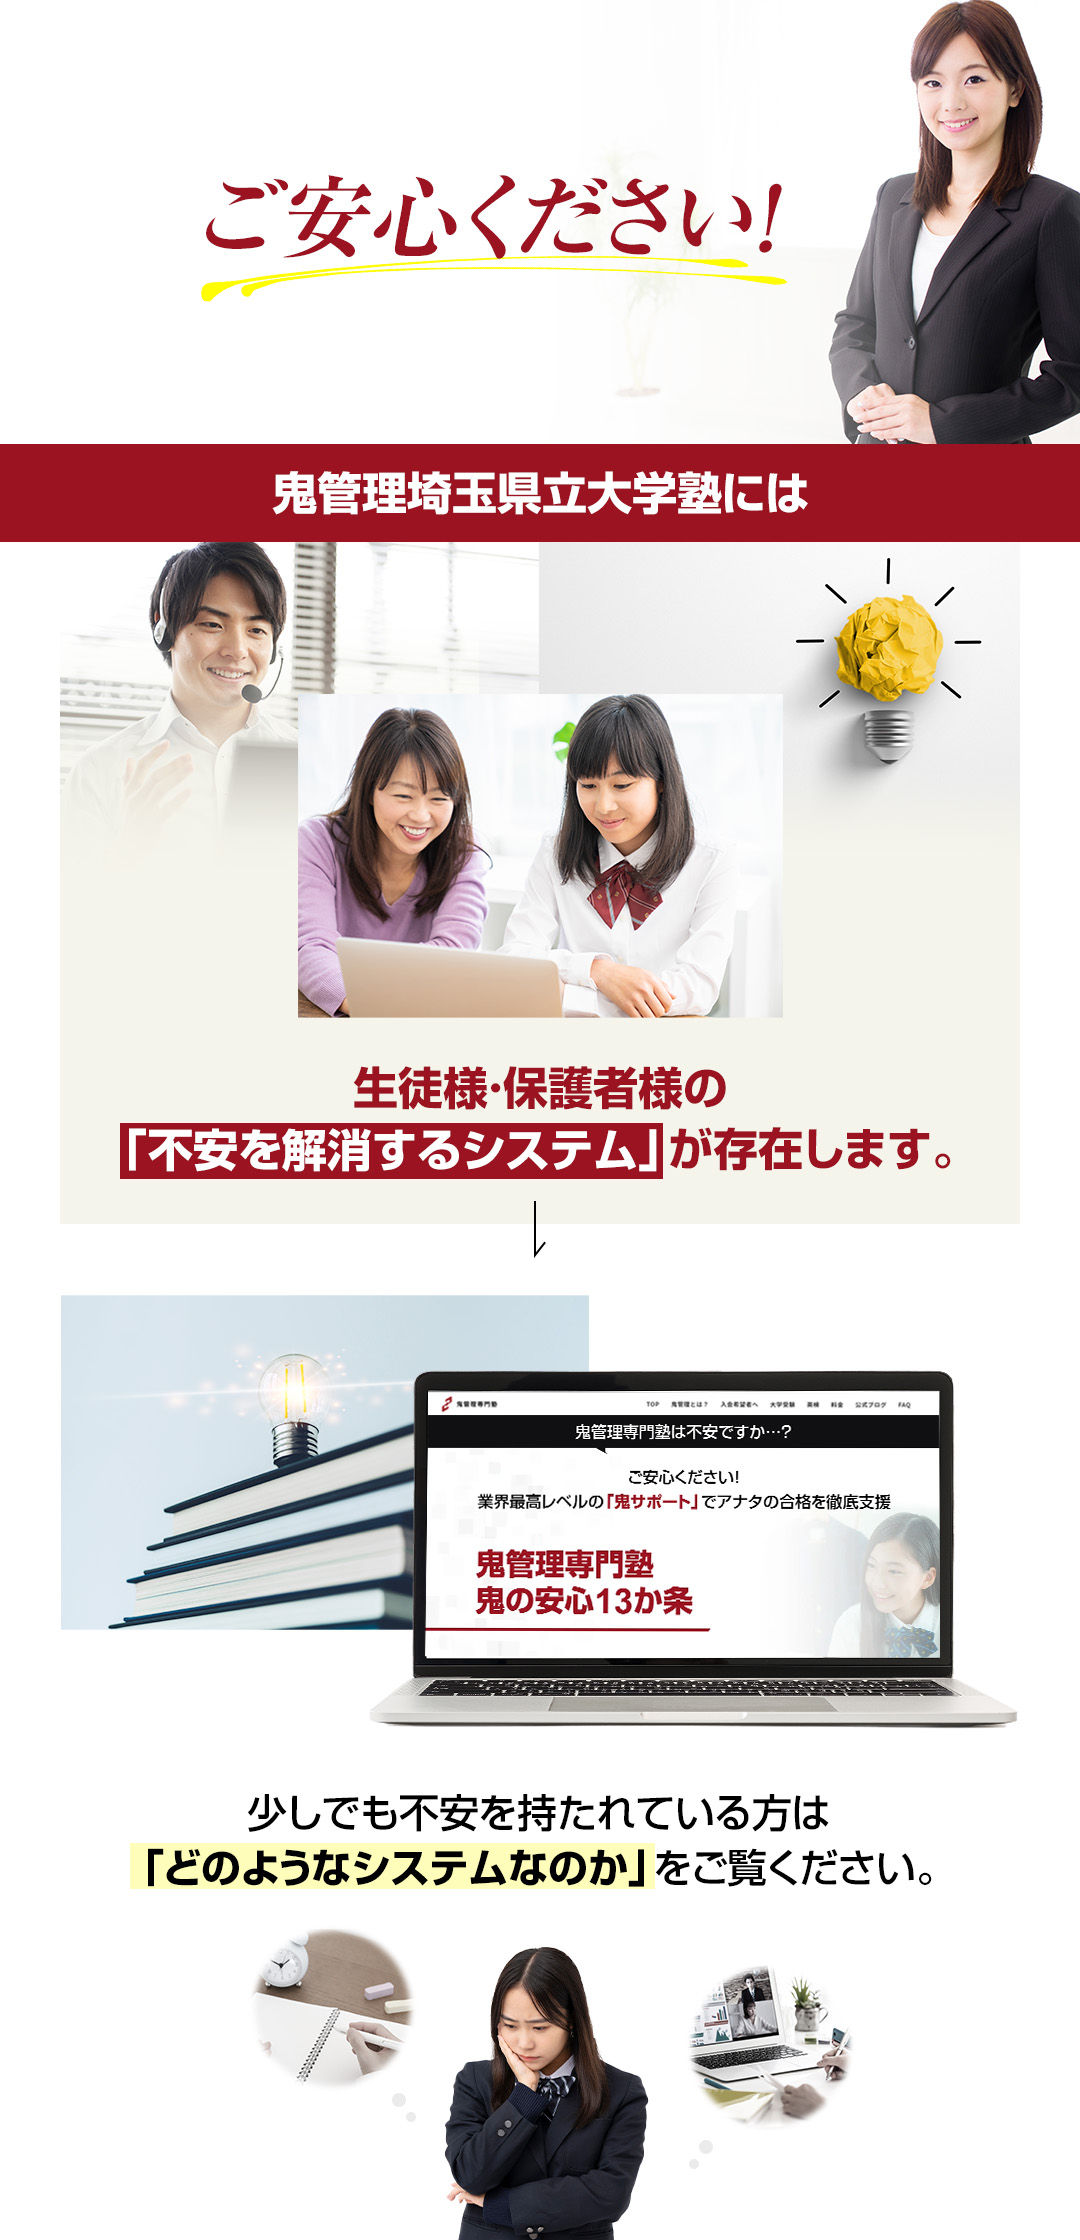 鬼管理埼玉県立大学塾には生徒様・保護者様の「不安を解消するシステム」が存在します